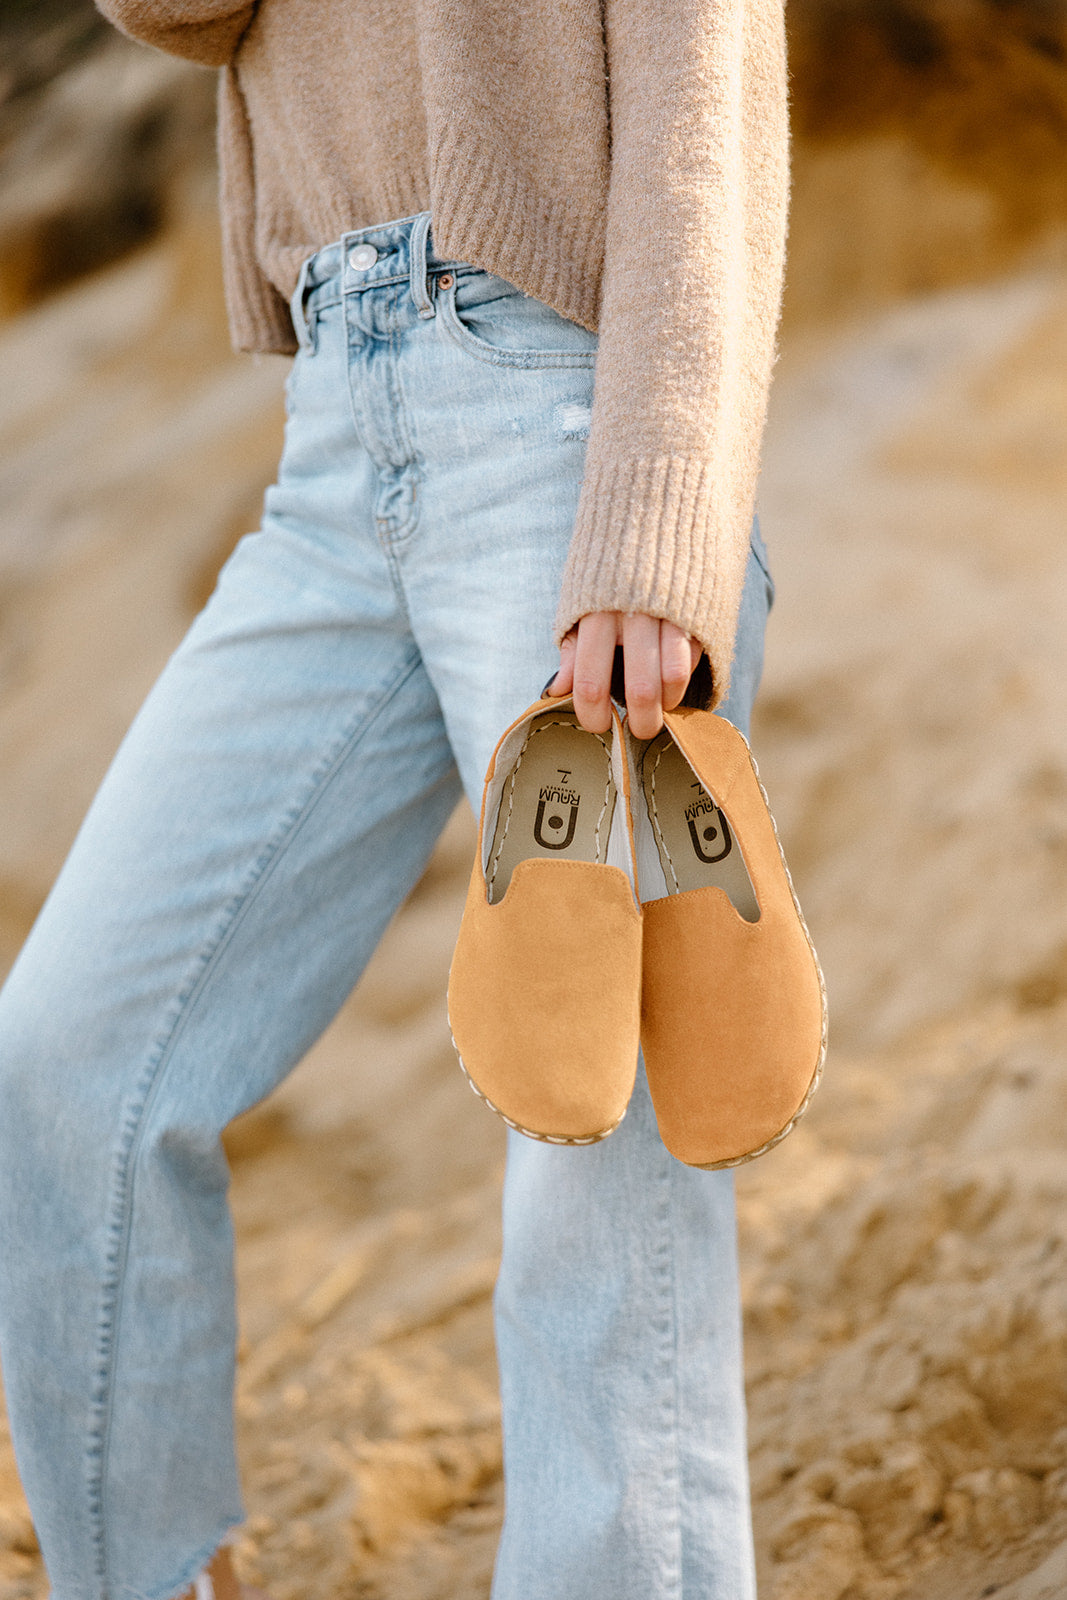 Women's Barefoot Grounding Slip-on Shoes / Tangerine